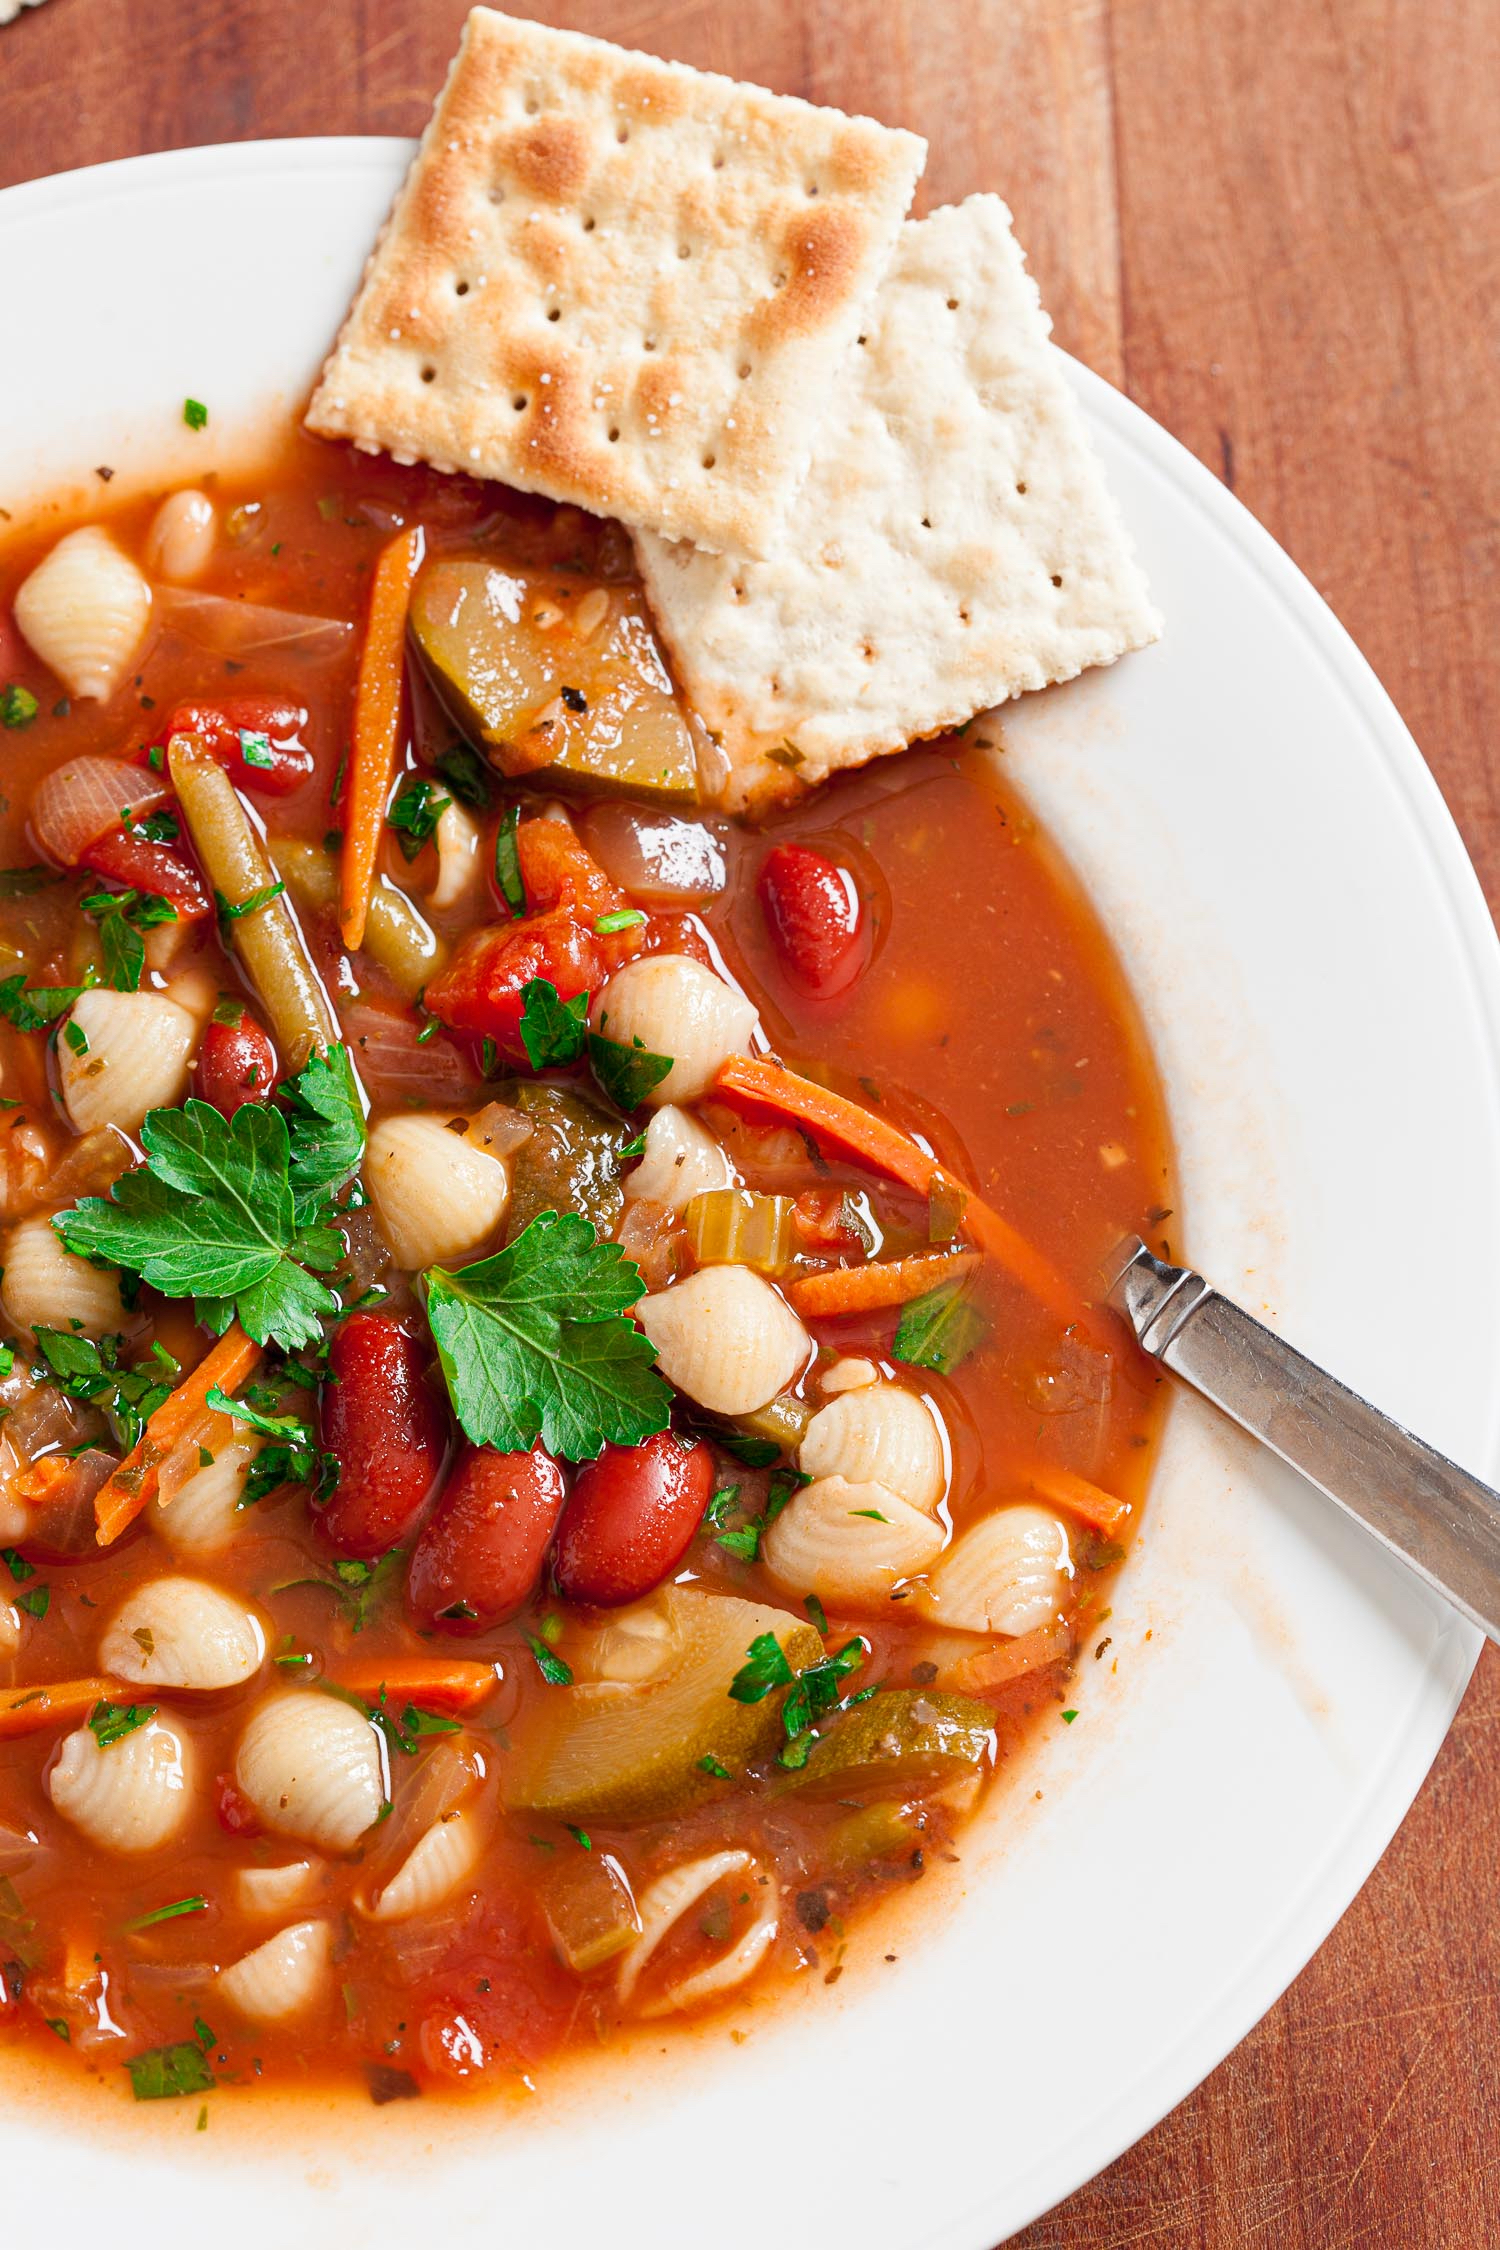 Món súp minestrone này thật hấp dẫn, nhưng bạn có thể thoải mái biến tấu món này dựa trên các nguyên liệu mà mình có sẵn. (Ảnh: Đăng dưới sự cho phép của cô Amy Dong)